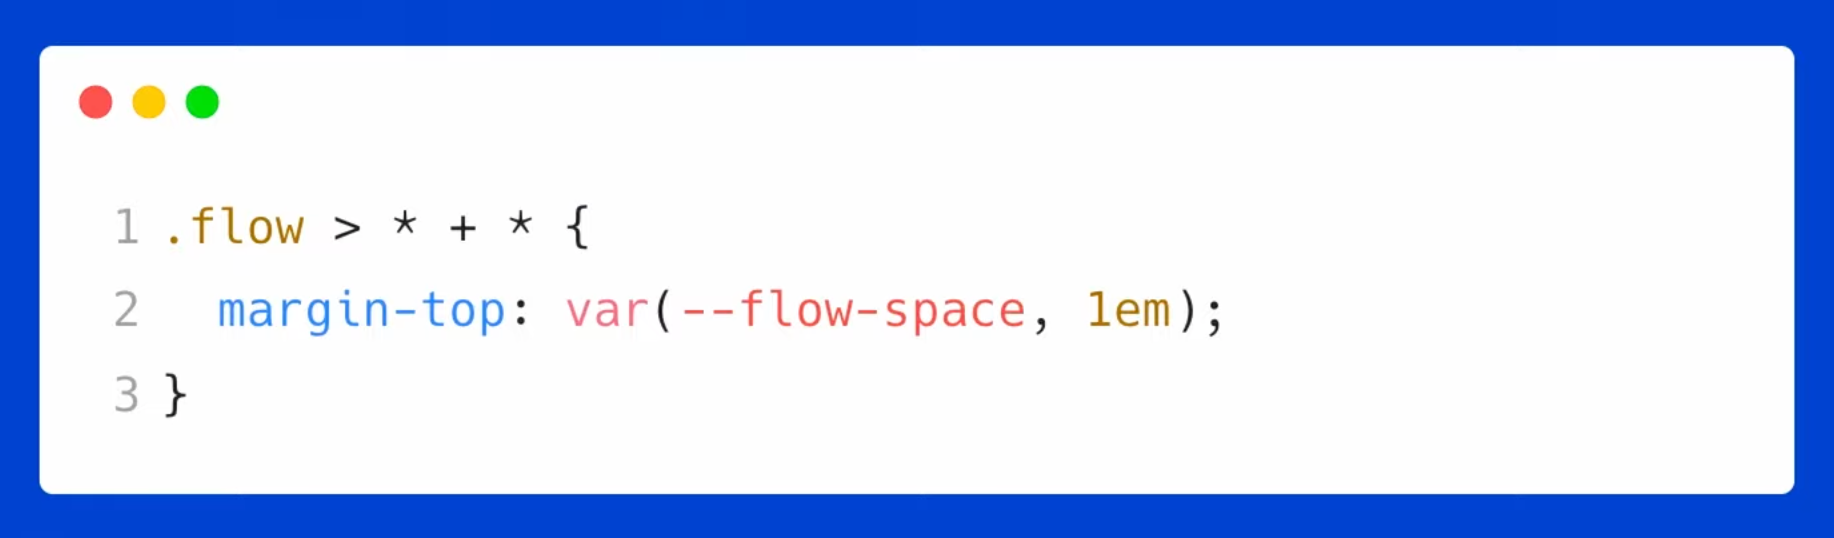 .flow > * + * { margin-top: var(--flow-space, 1rem); }